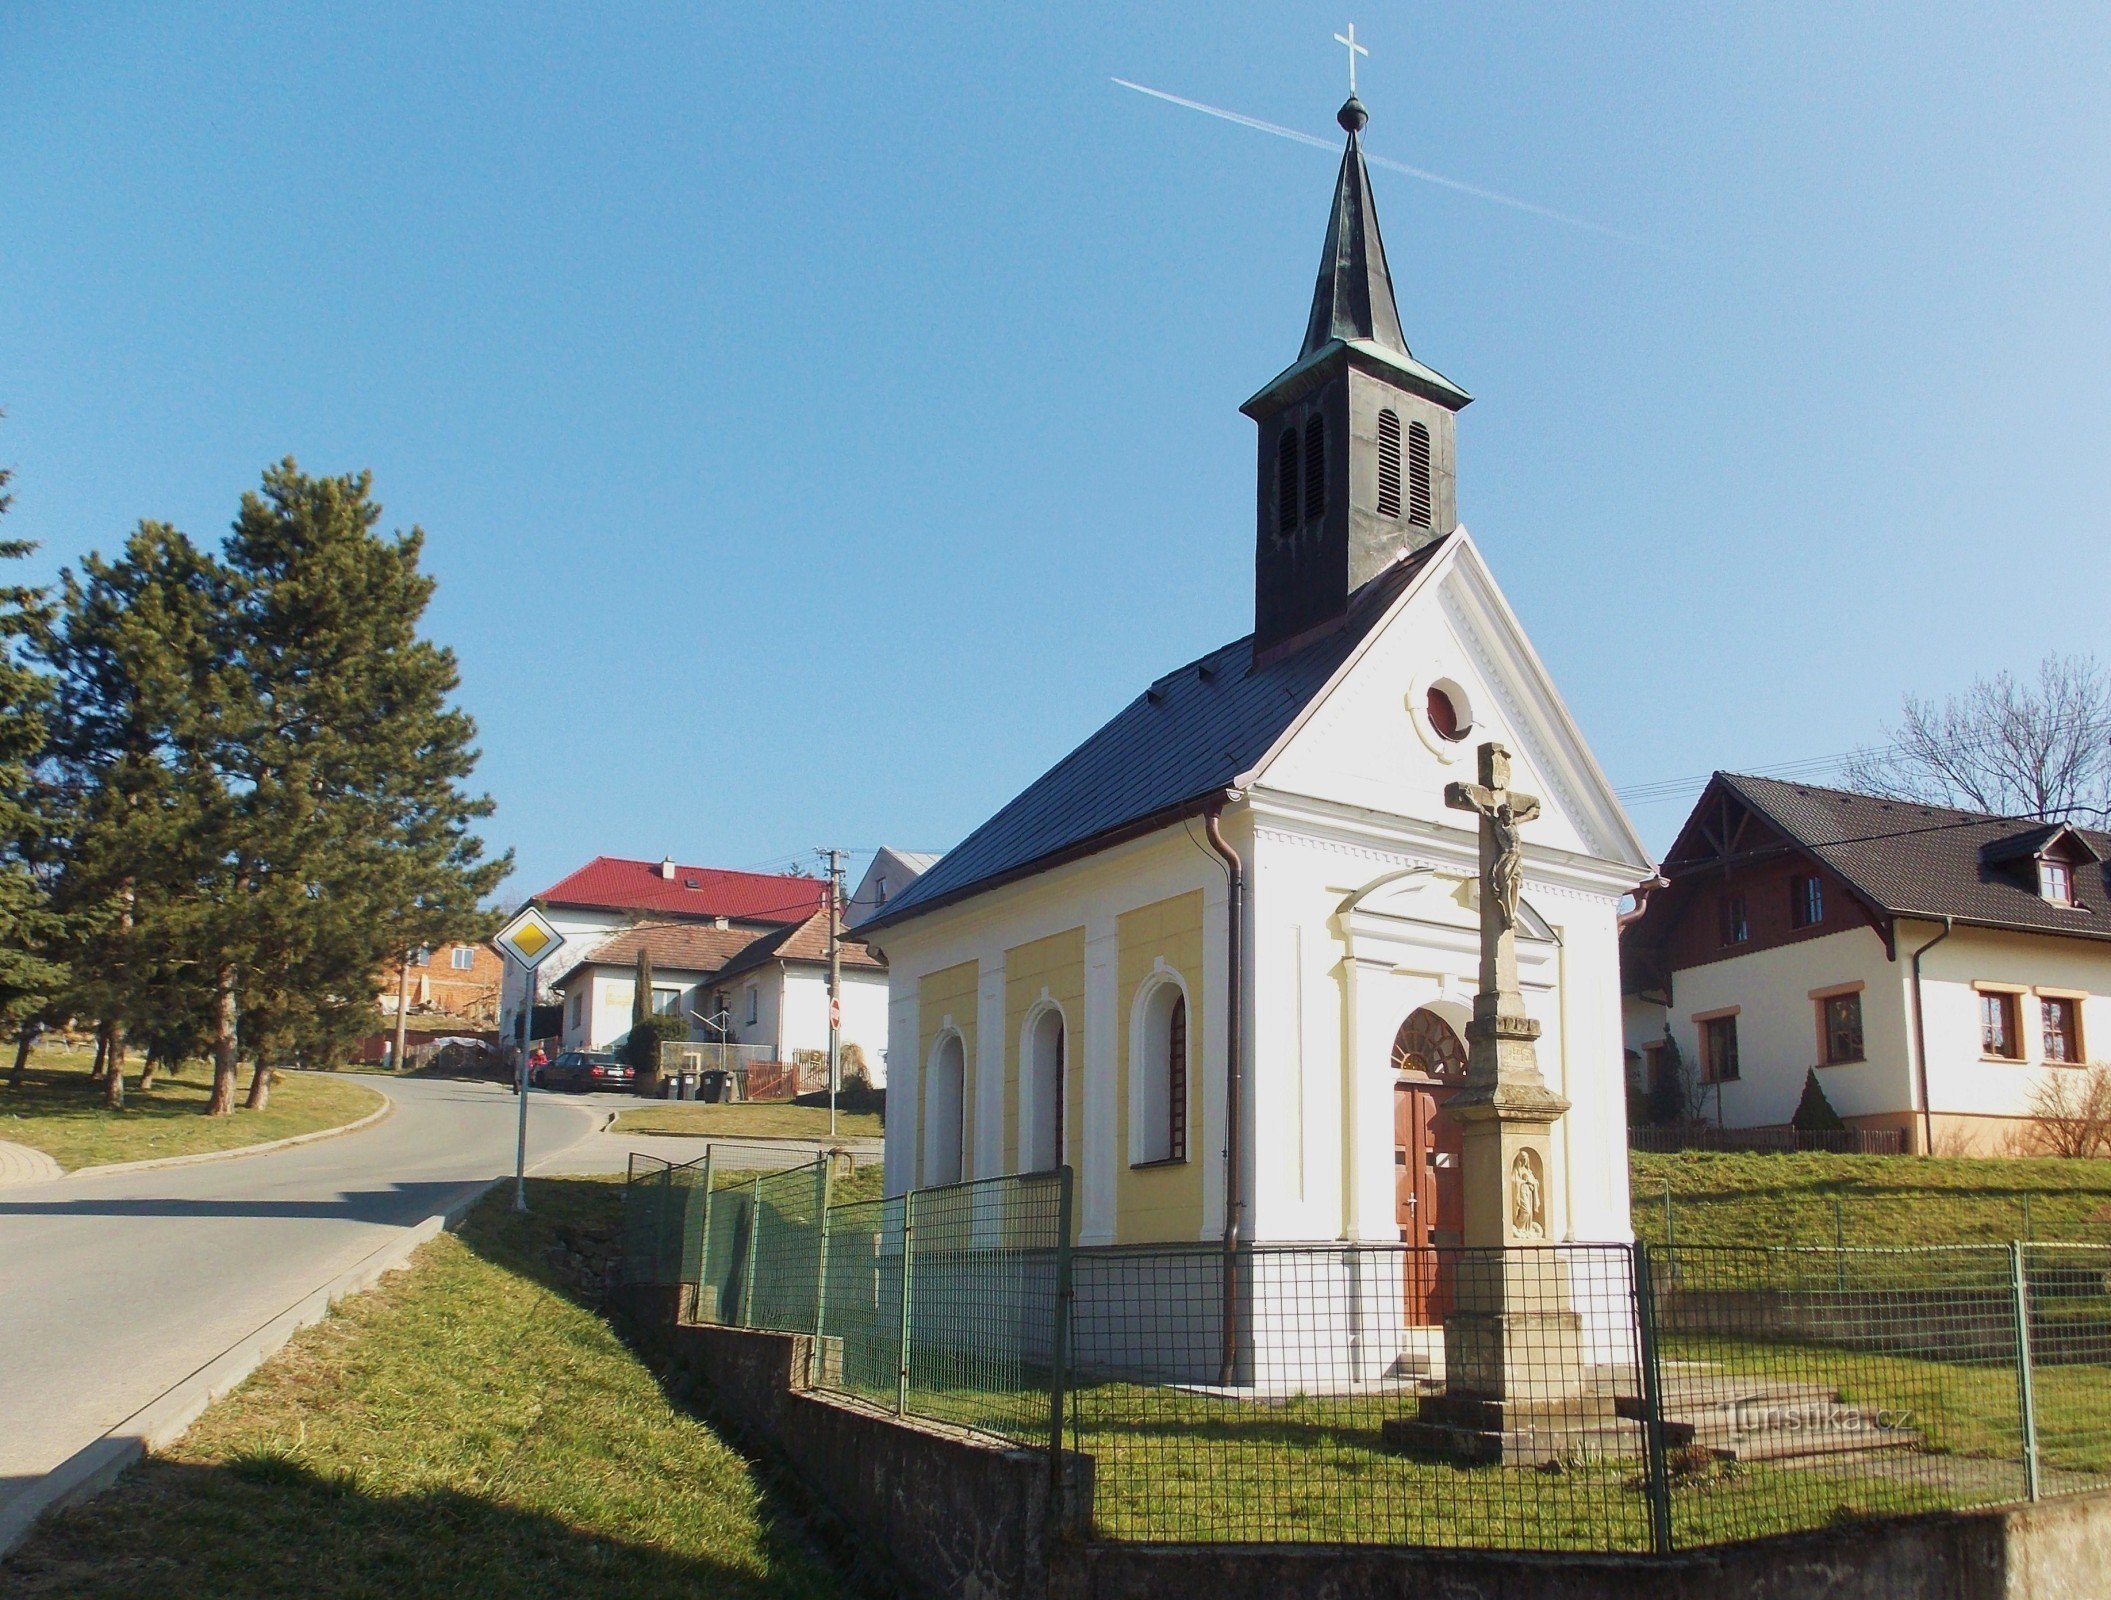 兹林附近 Příluky 的圣马丁教堂